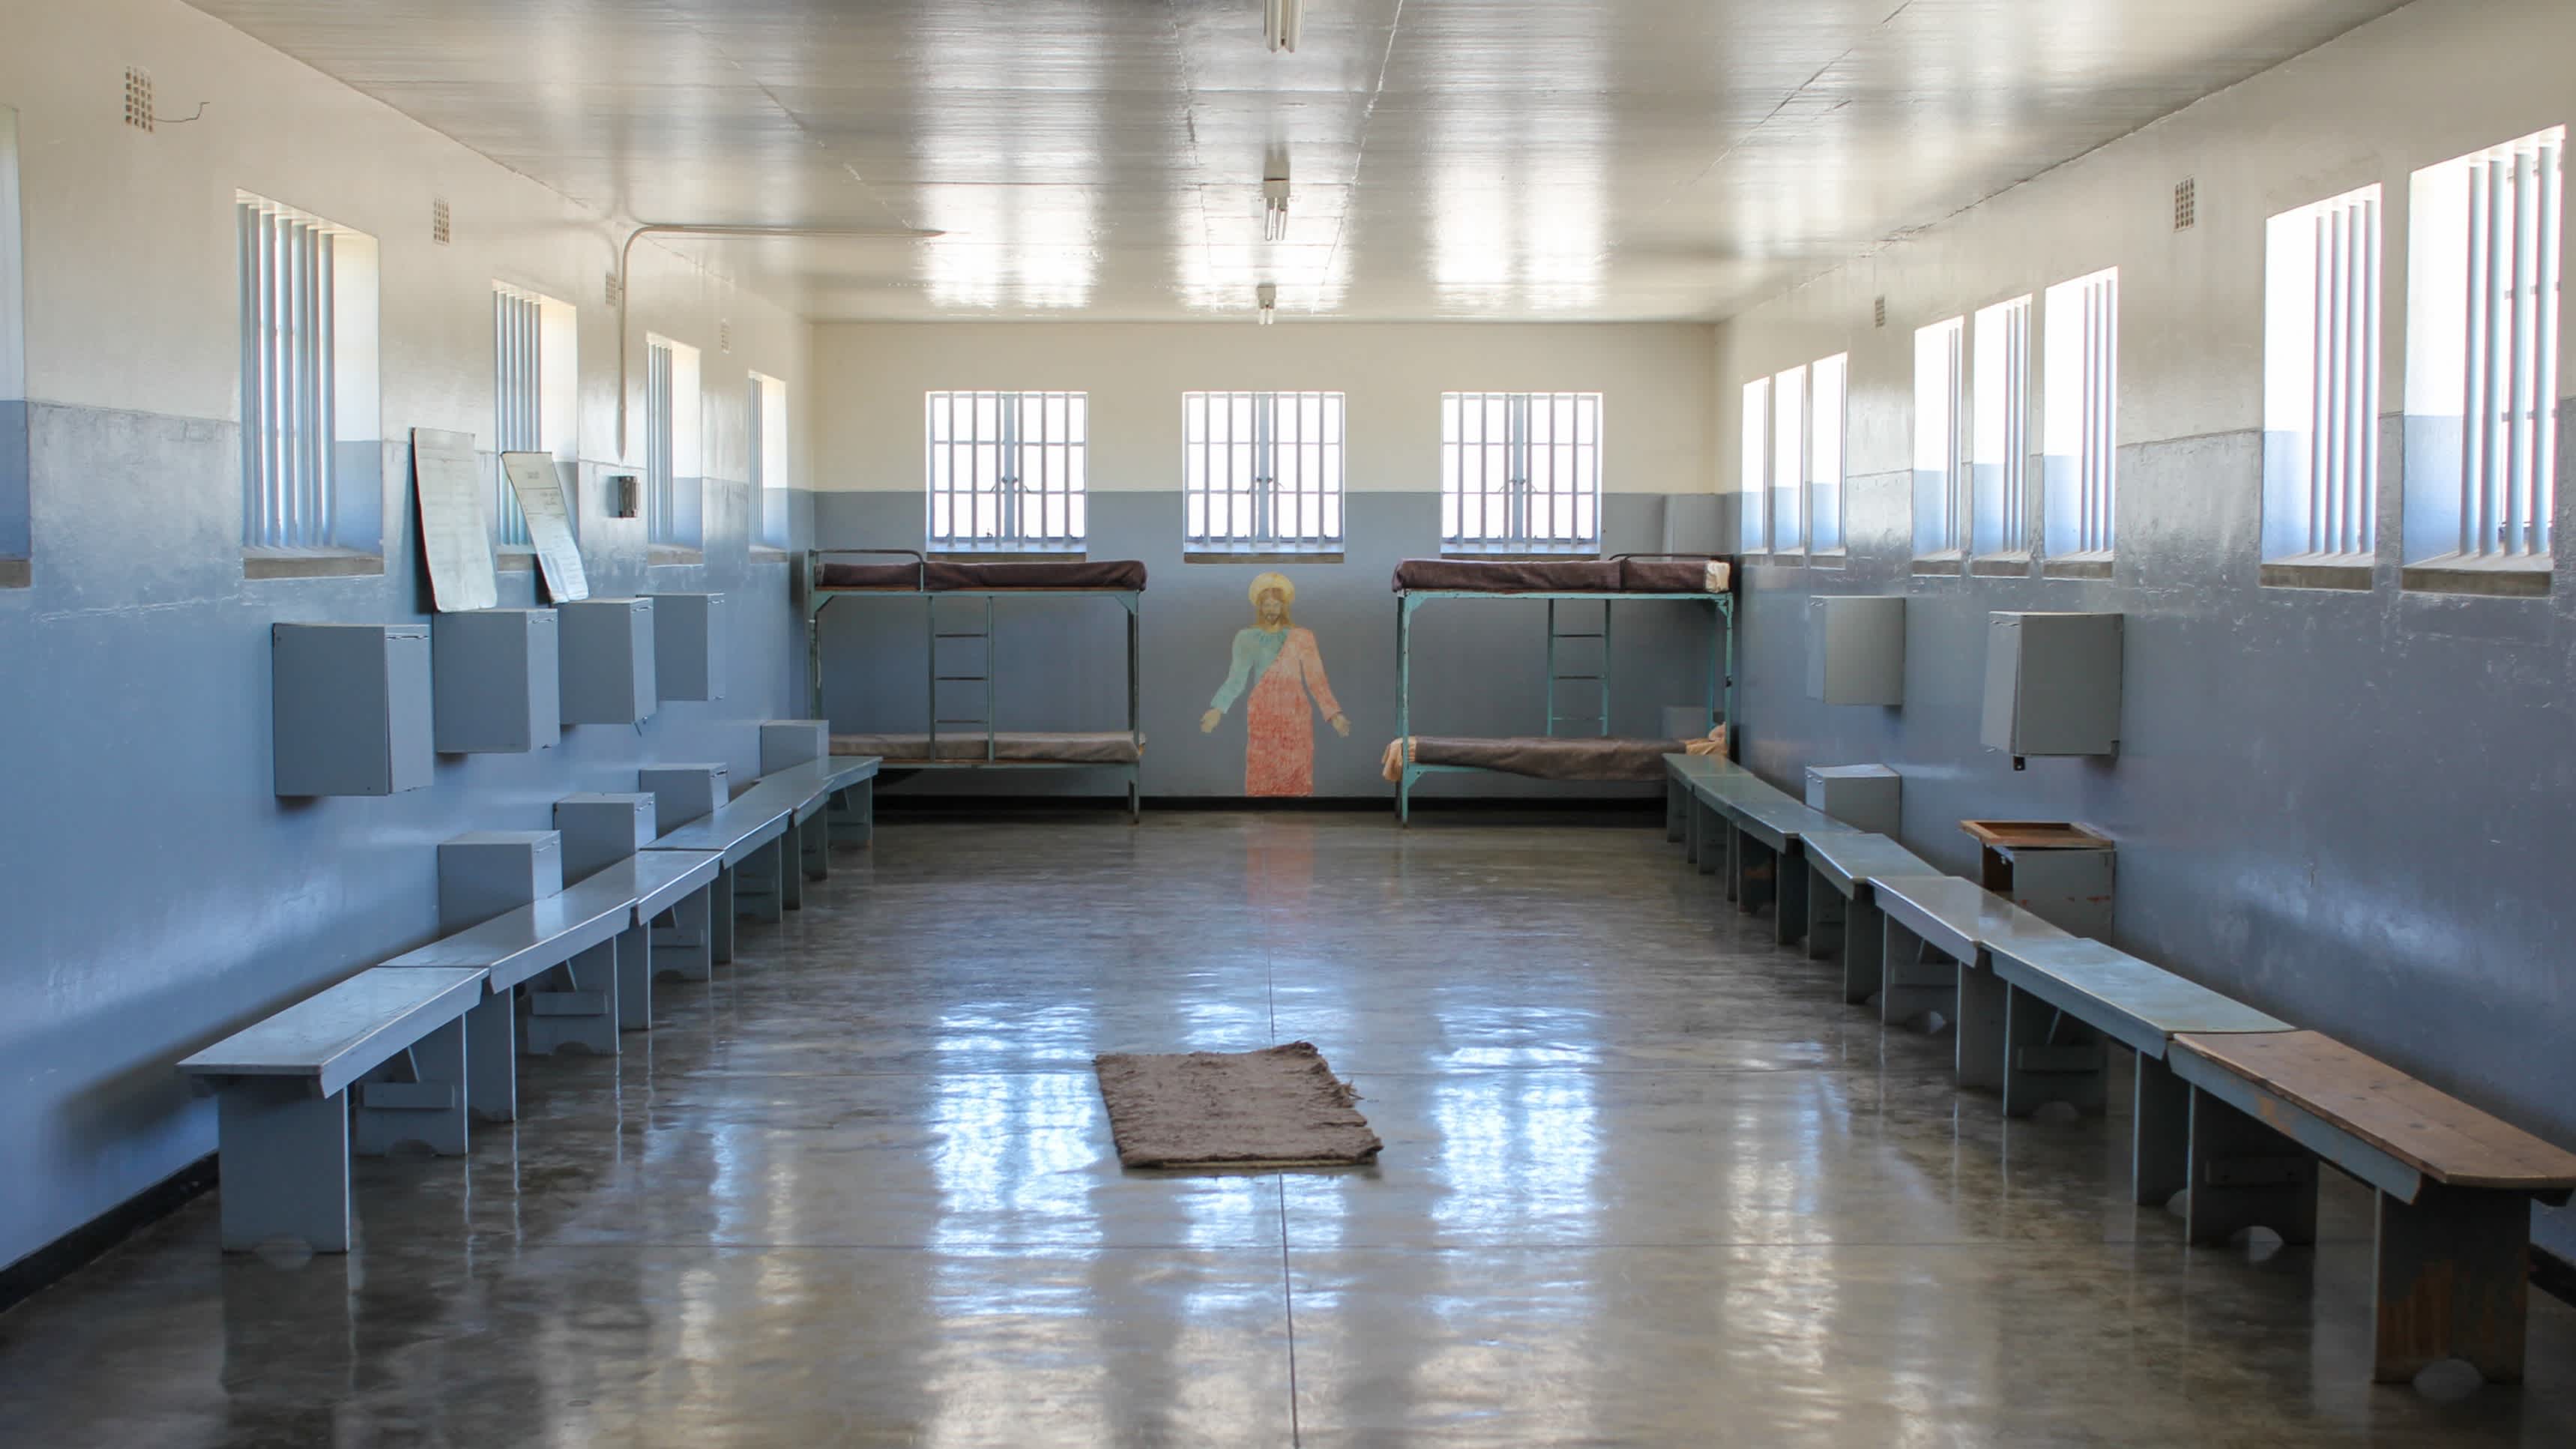 Cellule de prison de Robben Island en Afrique du Sud